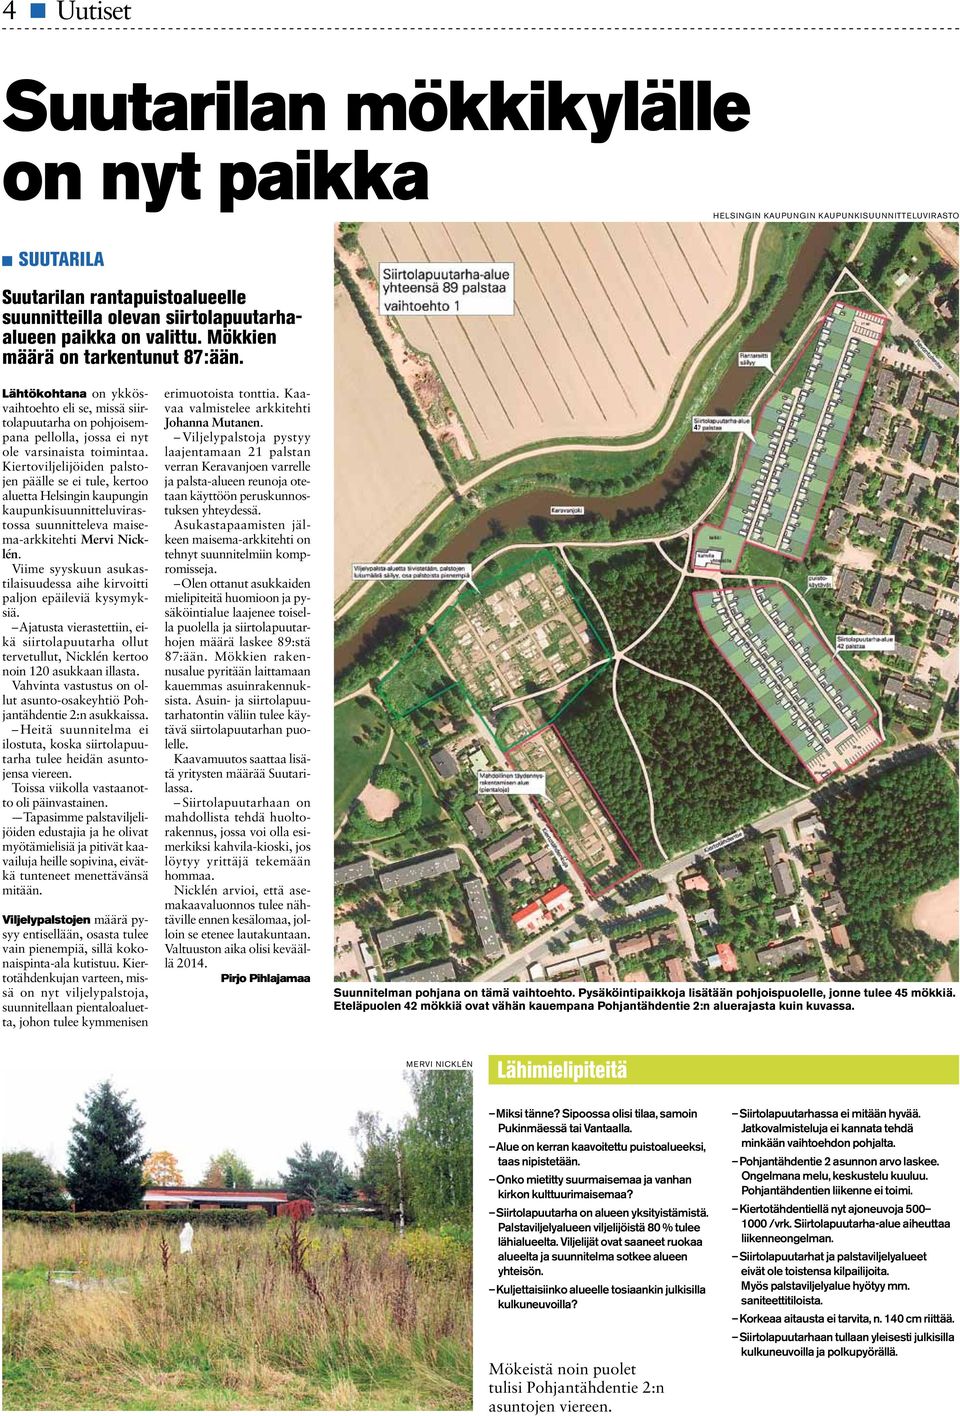 Kiertoviljelijöien palstojen päälle se ei tule, kertoo aluetta Helsingin kaupungin kaupunkisuunnitteluvirastossa suunnitteleva maisema-arkkitehti Mervi Nicklén.